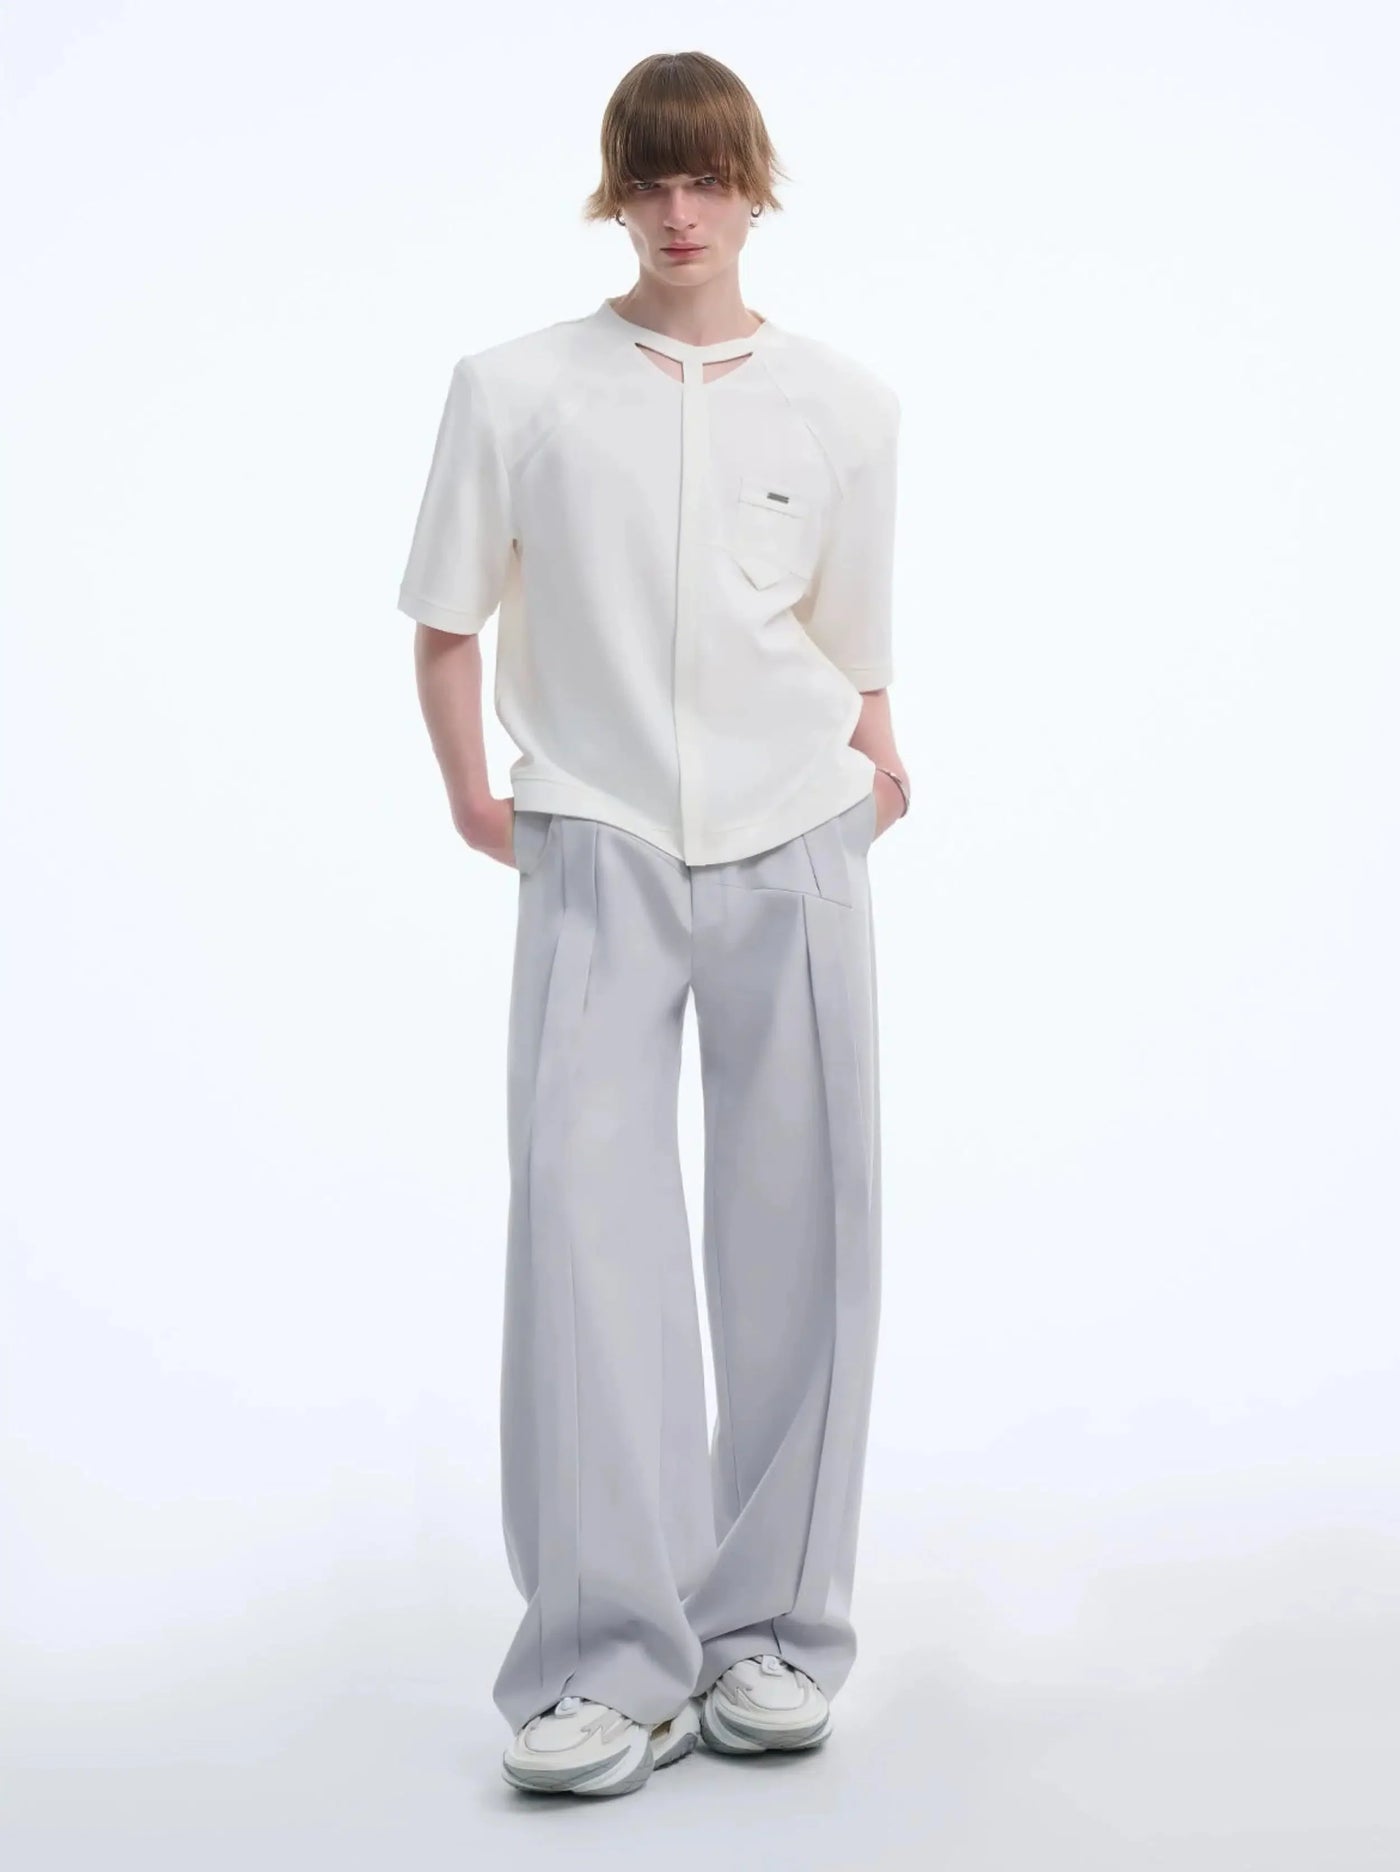 TIWILLTANG Structured Modern Layer T-Shirt Korean Street Fashion T-Shirt By TIWILLTANG Shop Online at OH Vault